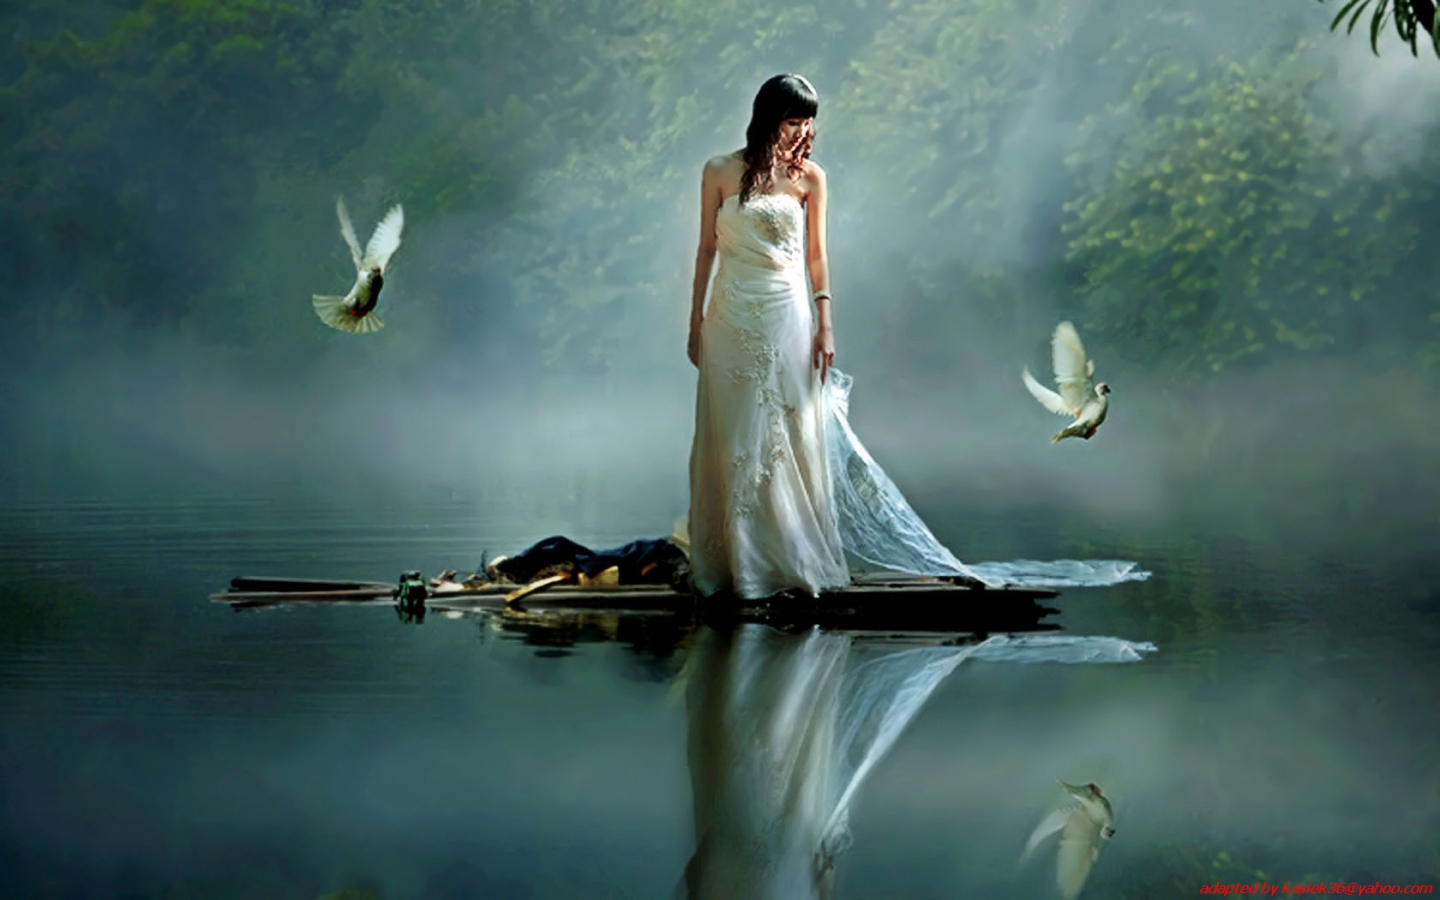 Словно белая луна. Отражение девушки в воде. Девушка над озером. Ангел воды. Девушка и озеро мистика.